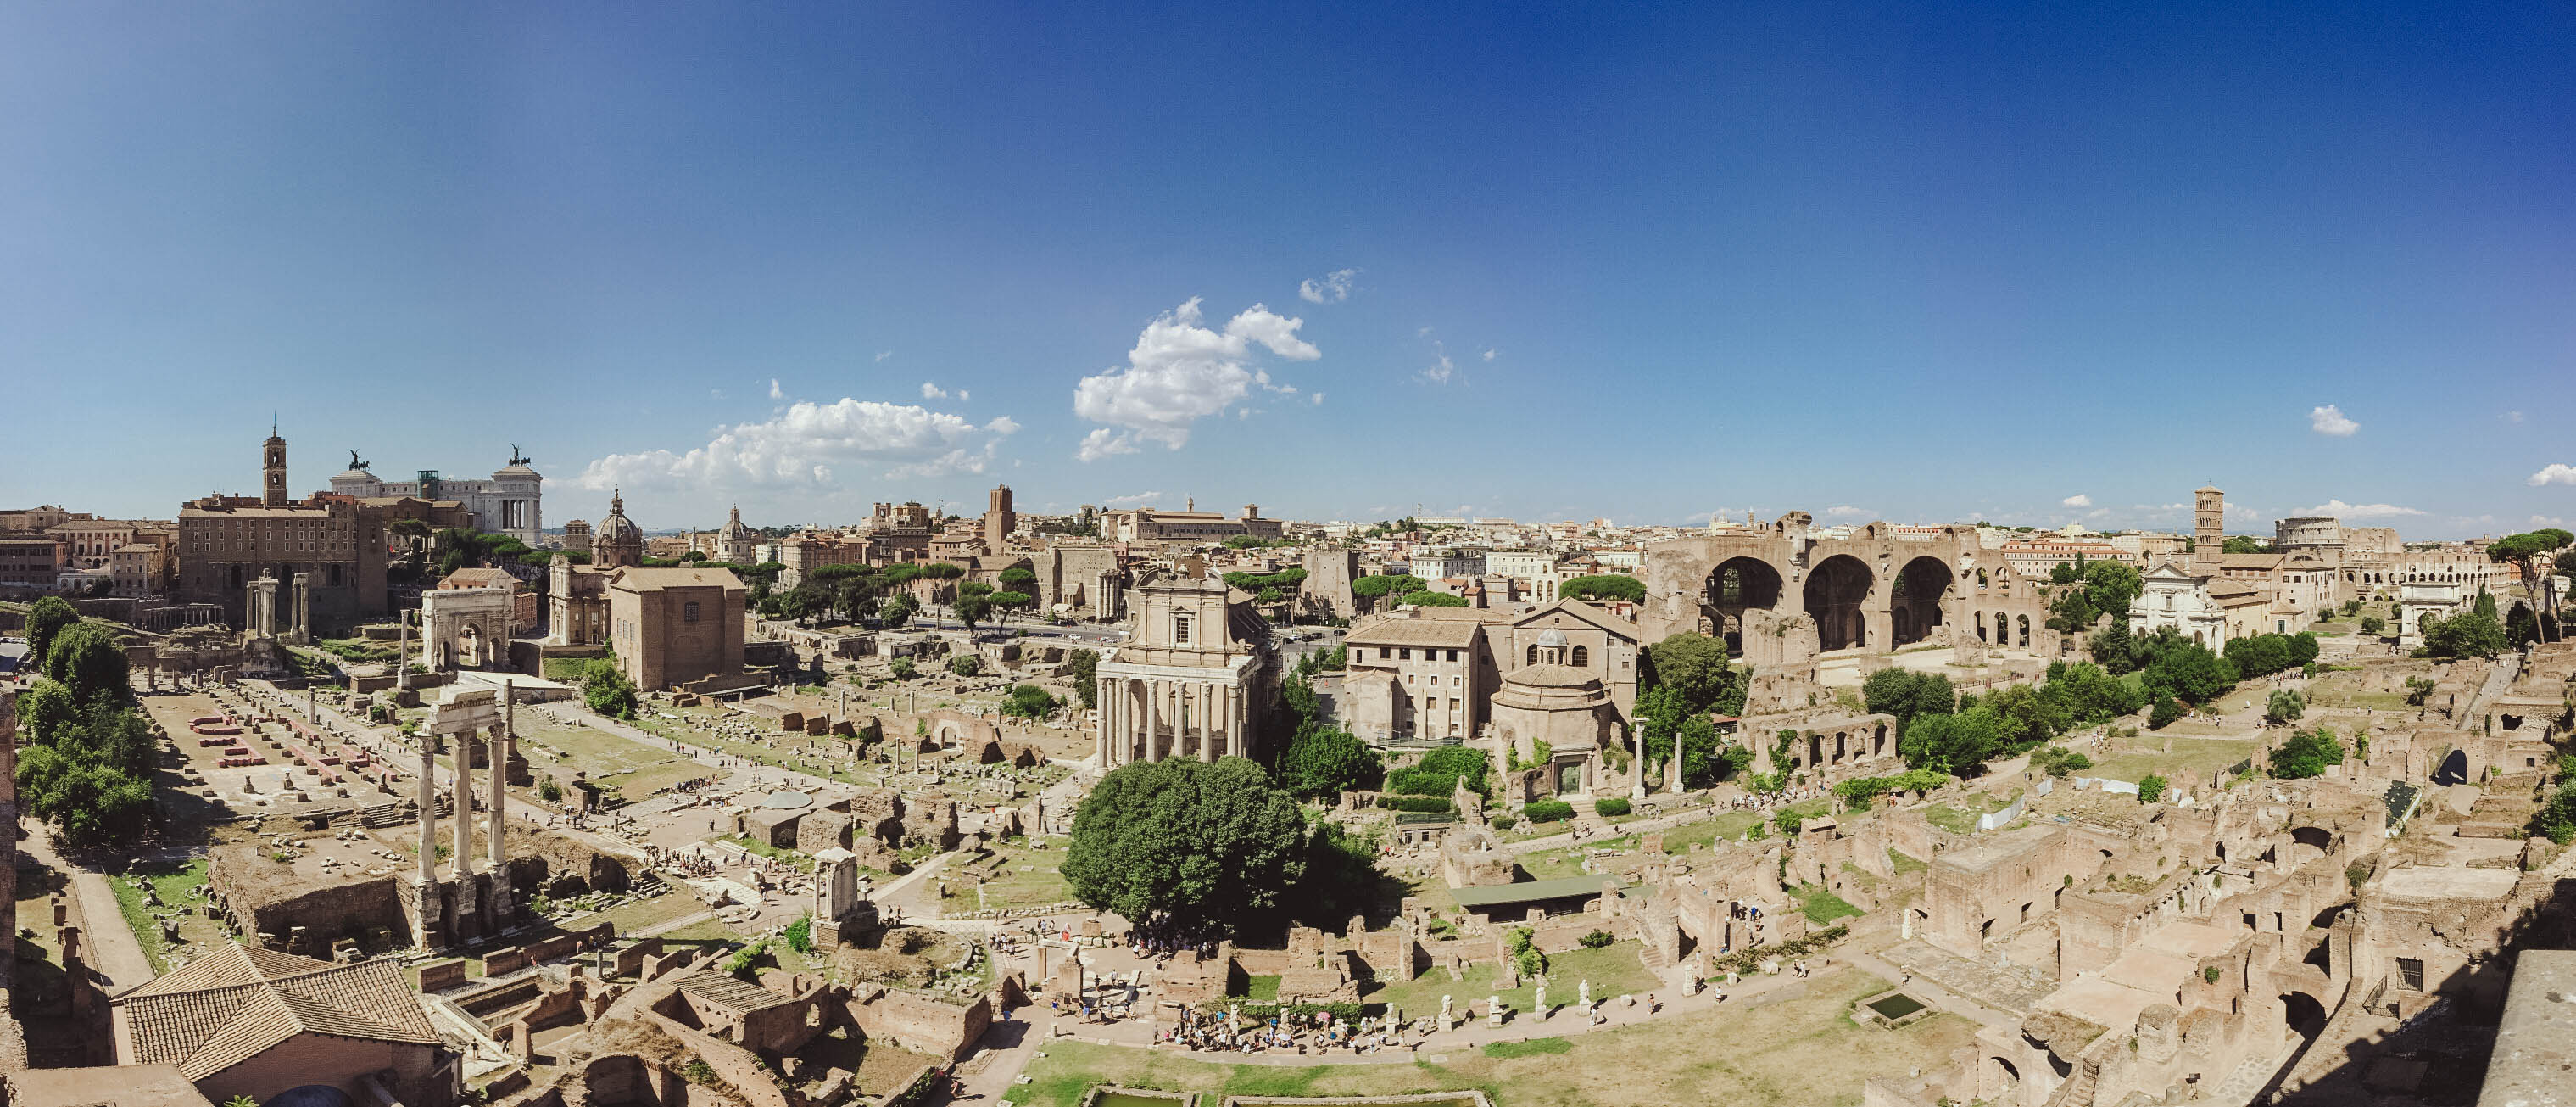 Rome - Forum Panorama